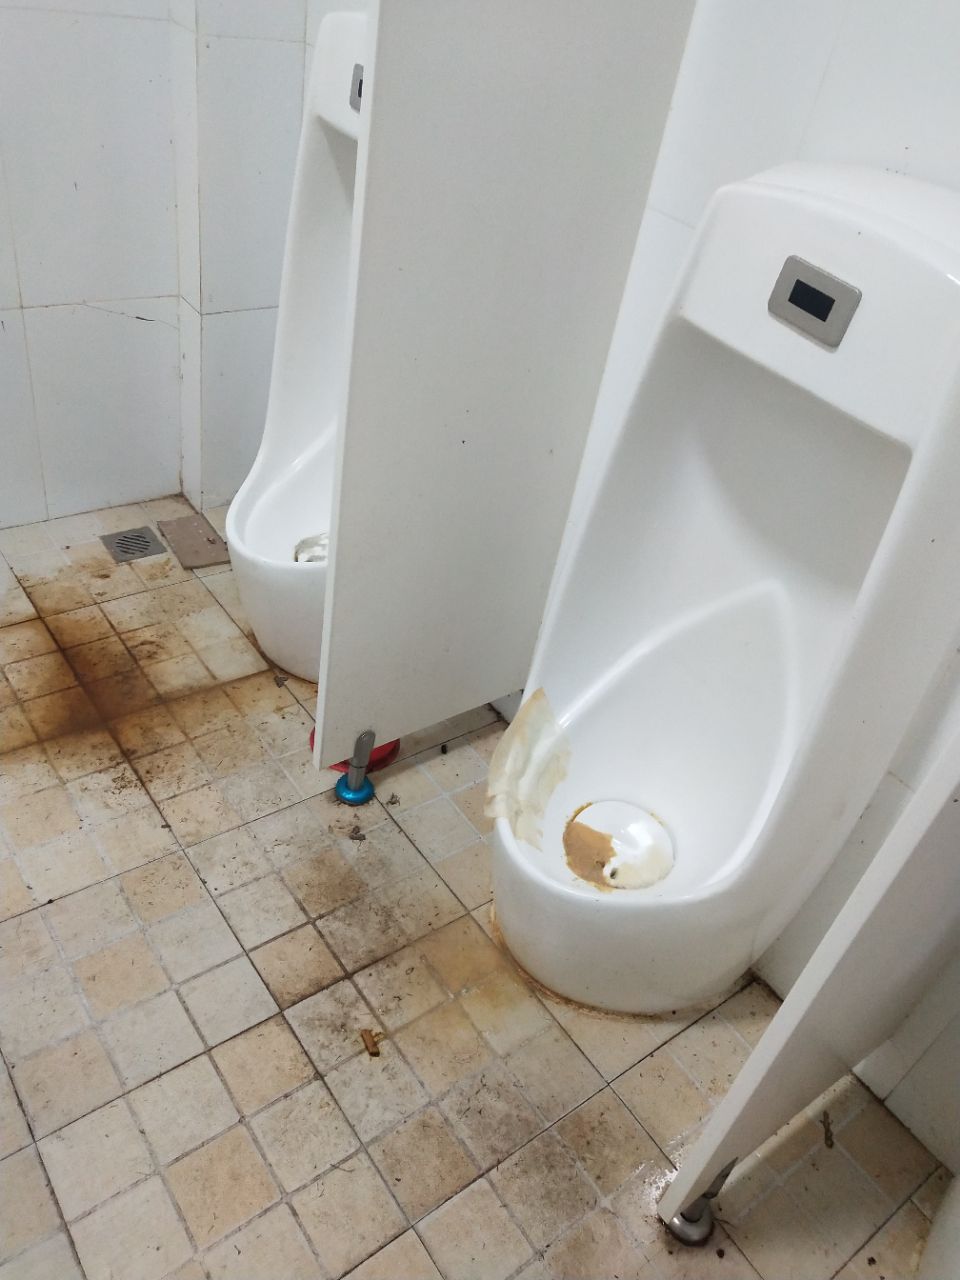 百荷公园里的厕所太脏了